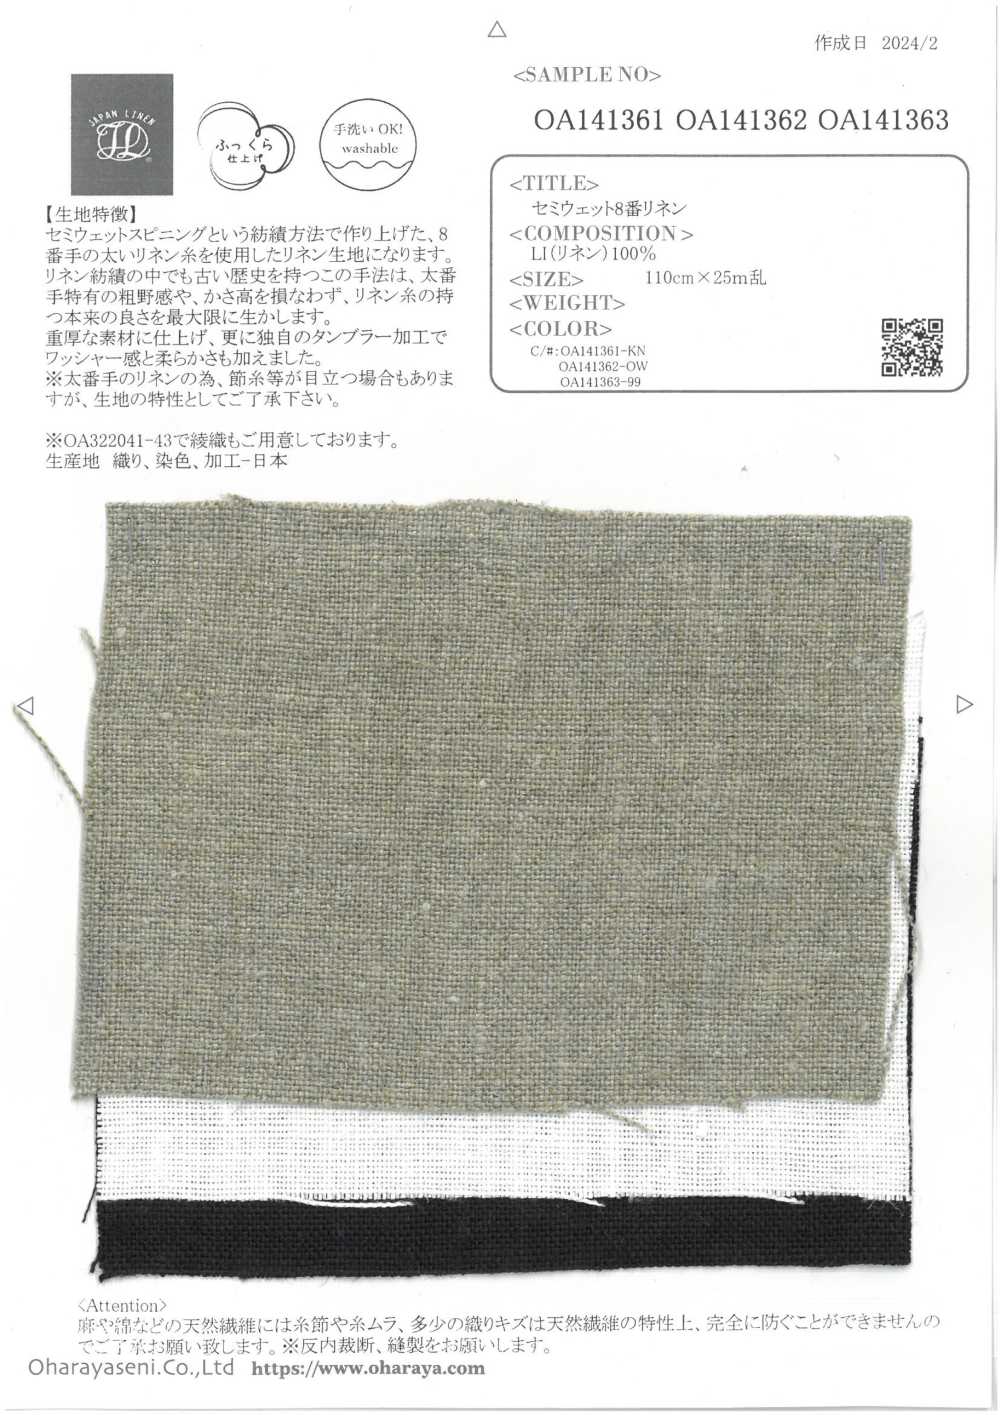 OA141361 Lin N°8 Semi-humide[Fabrication De Textile] Oharayaseni